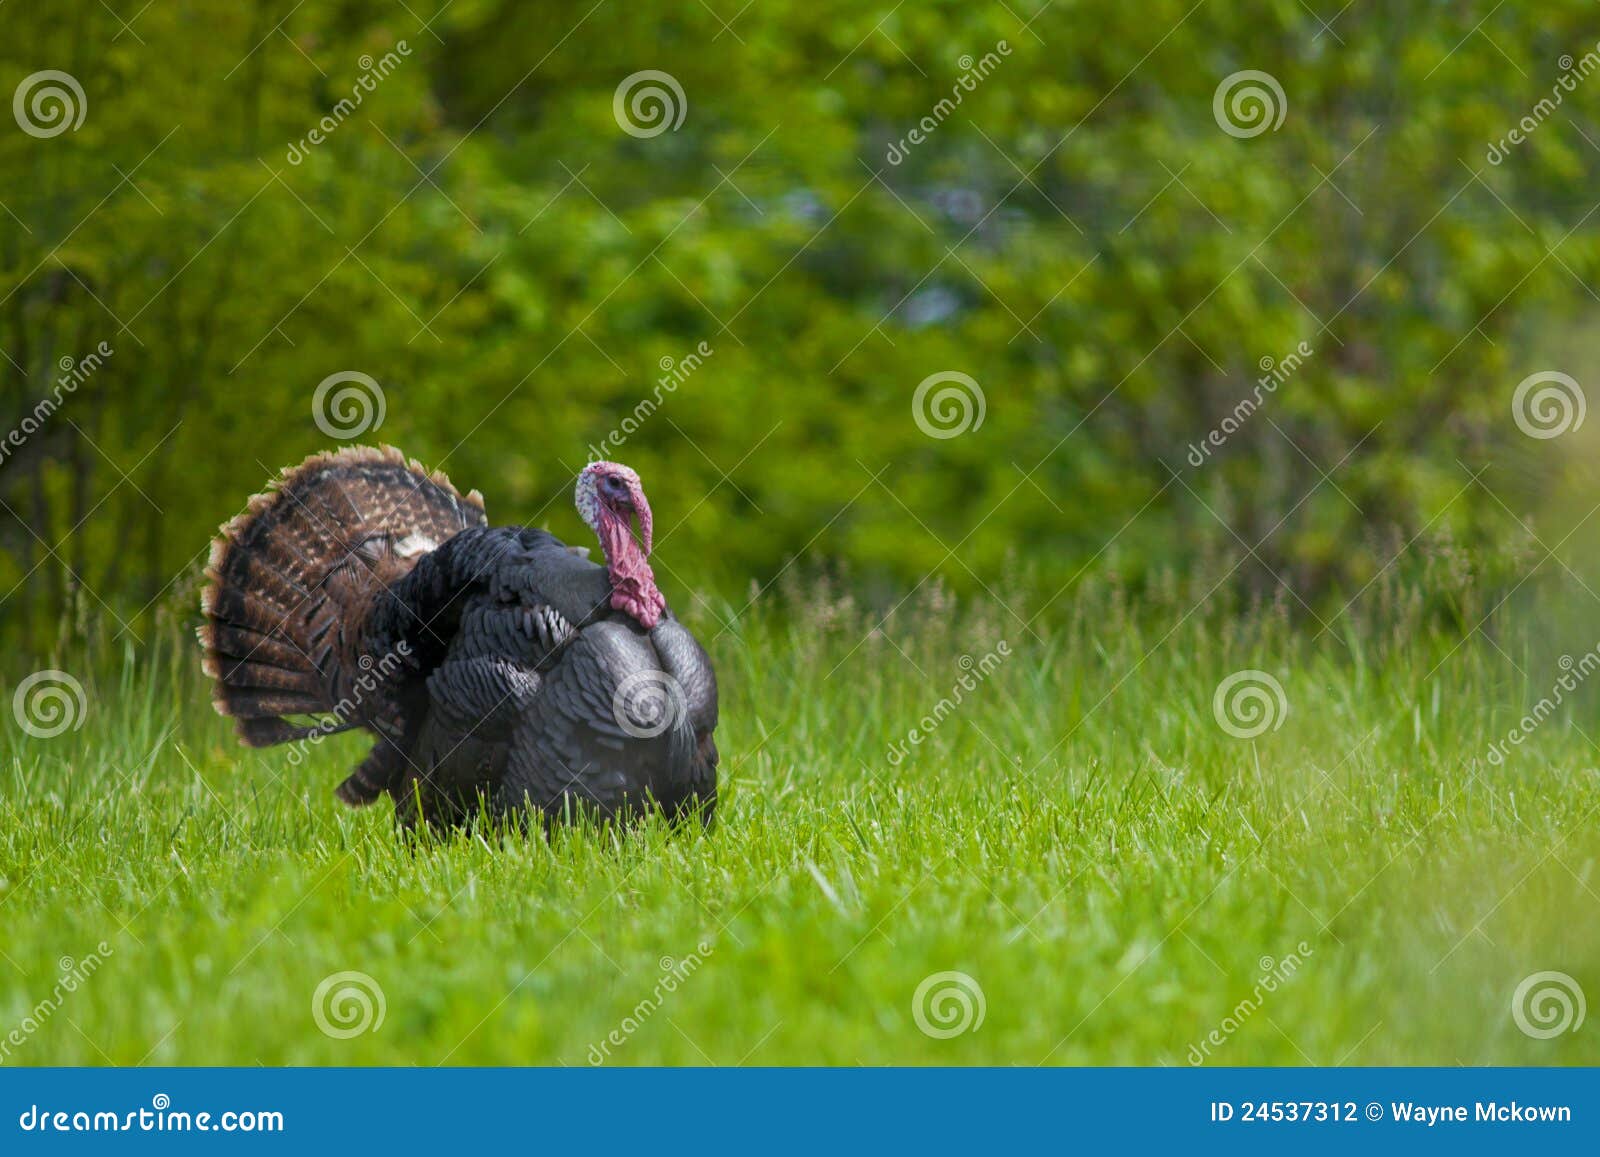 strutting wild turkey